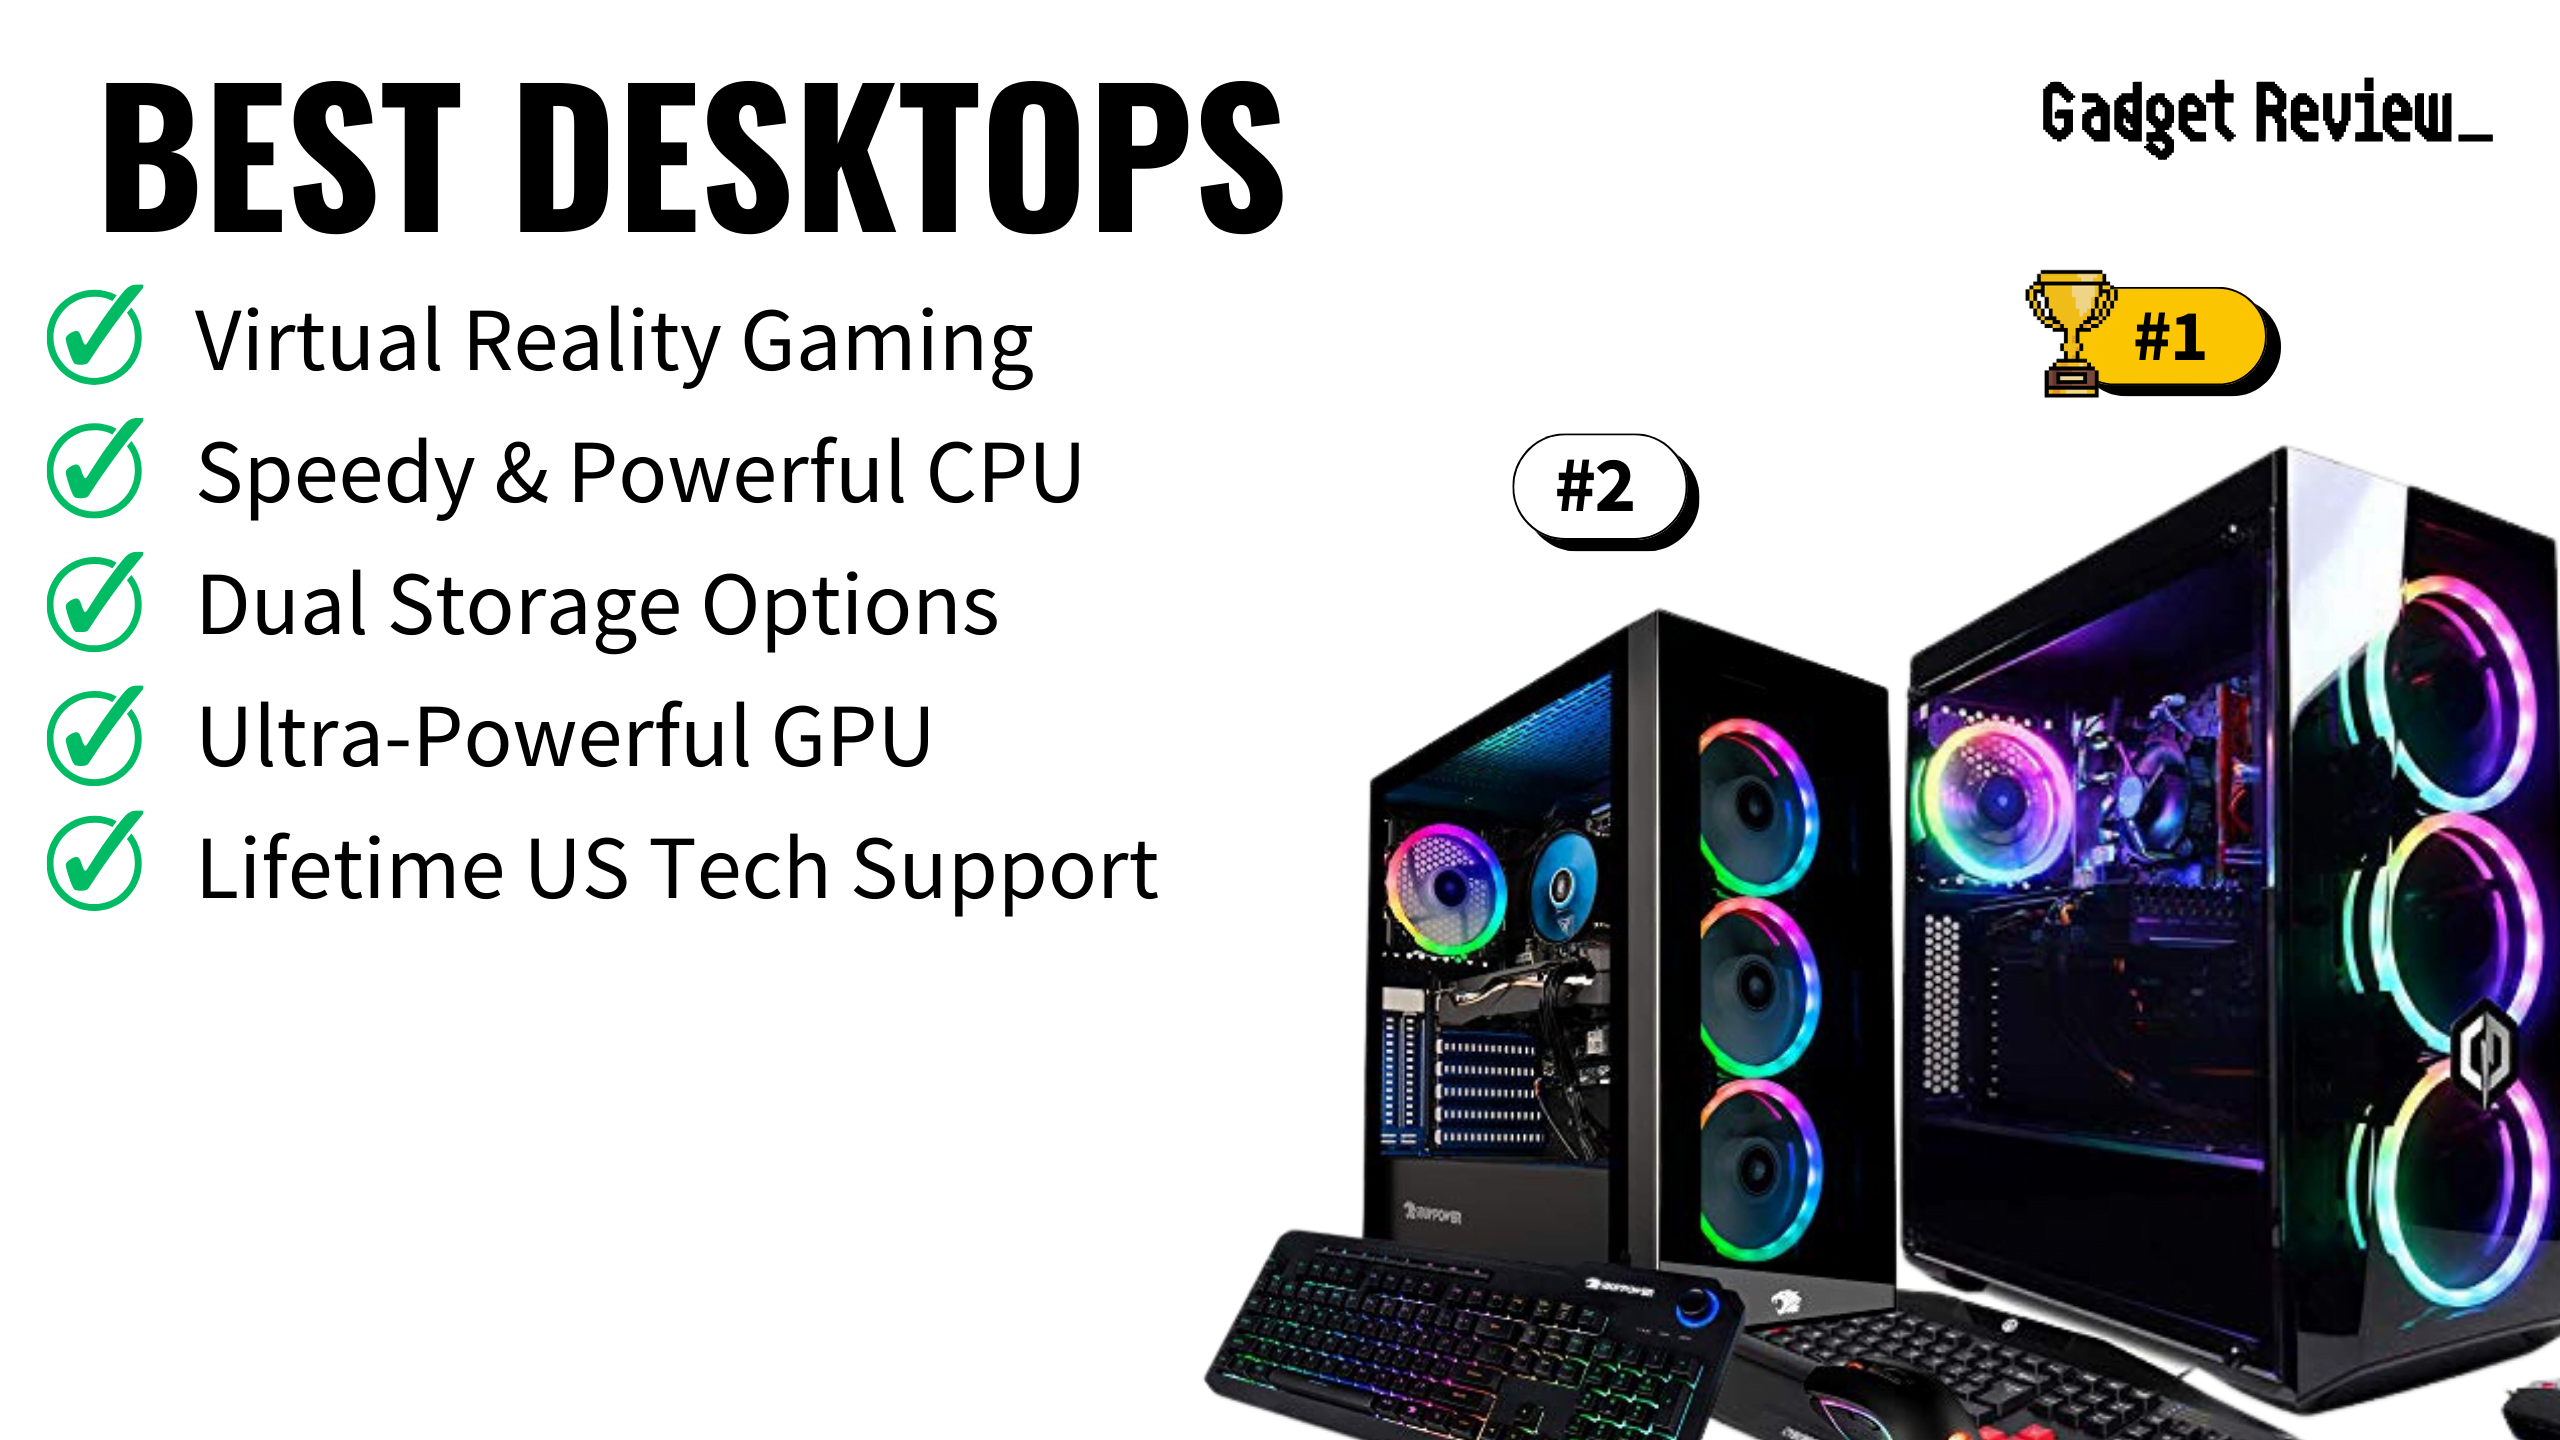 Best Desktops